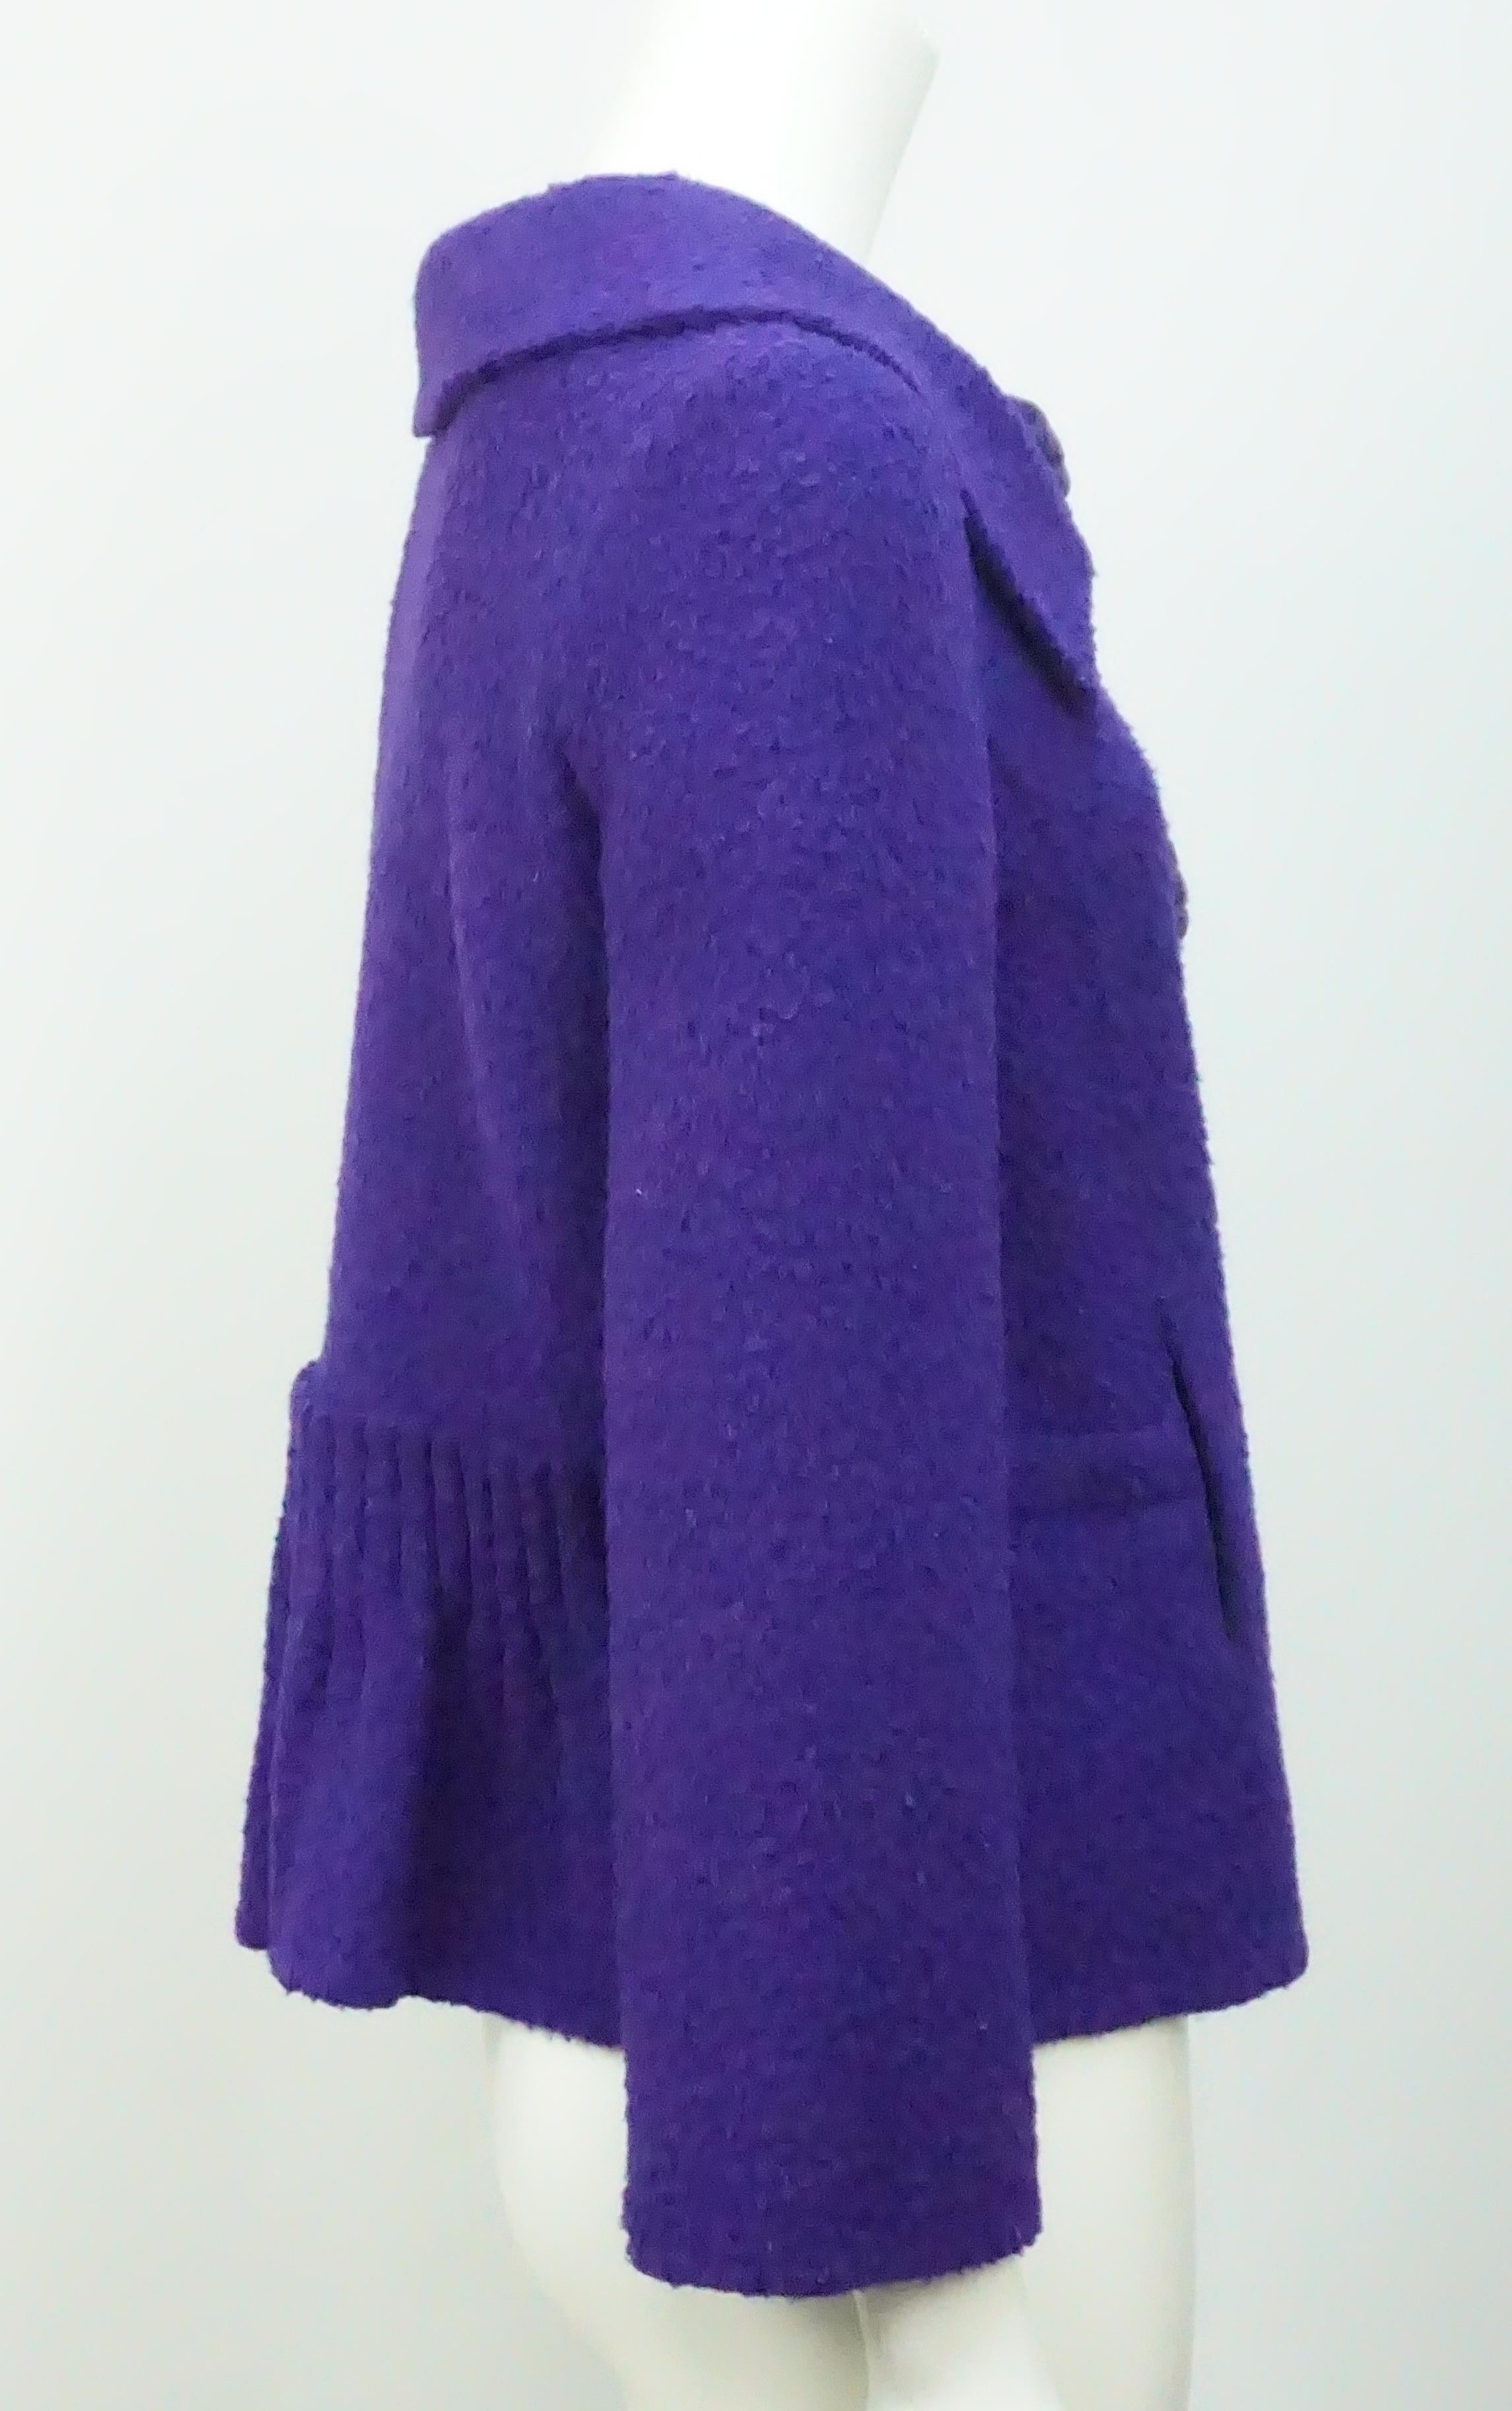 Veste en alpaga violet Oscar de la Renta avec boutons floraux-8. Cette magnifique veste est d'un violet profond composé de laine et d'alpaga. Elle est en excellent état. La veste a trois grands boutons avec des appliques florales. Il a été publié à